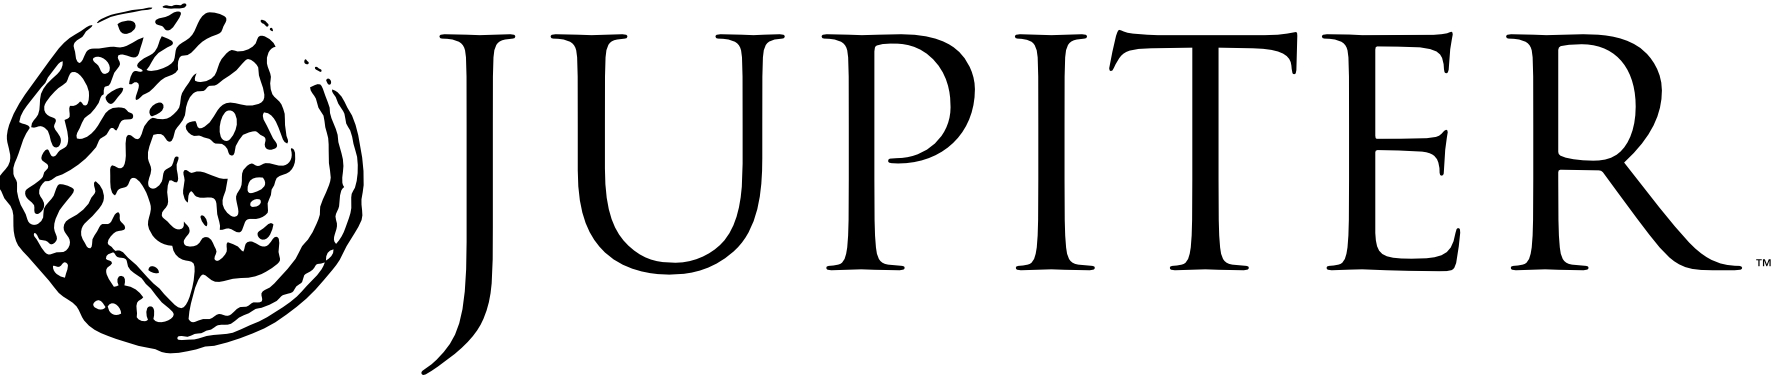 jupiter logo.jpg